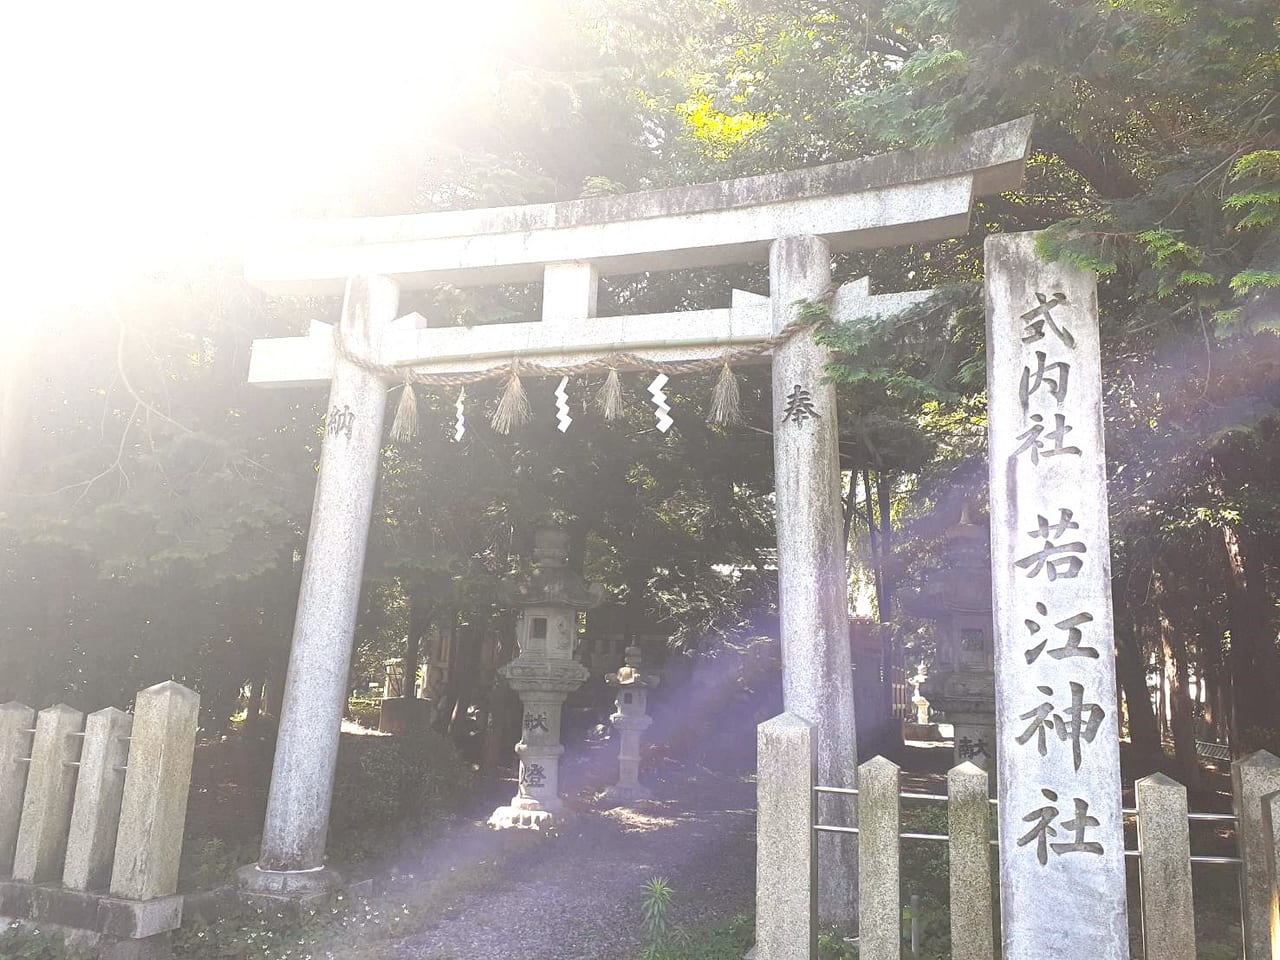 若江神社